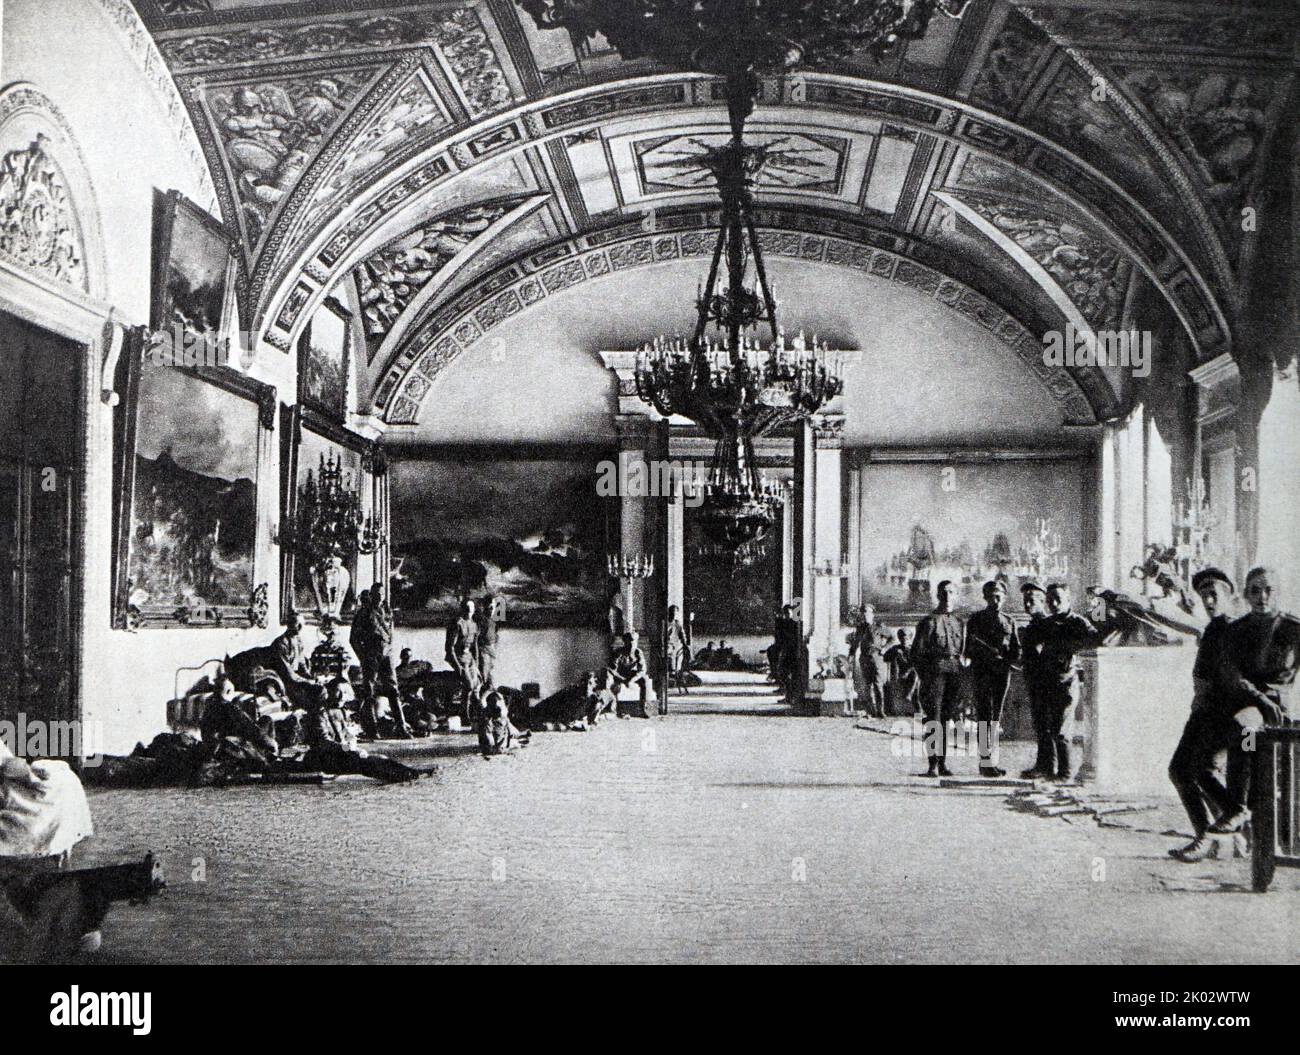 Eine Abteilung von junkers in den Hallen des Winterpalastes. Oktober 1917. Foto von K. Kubesch. Stockfoto